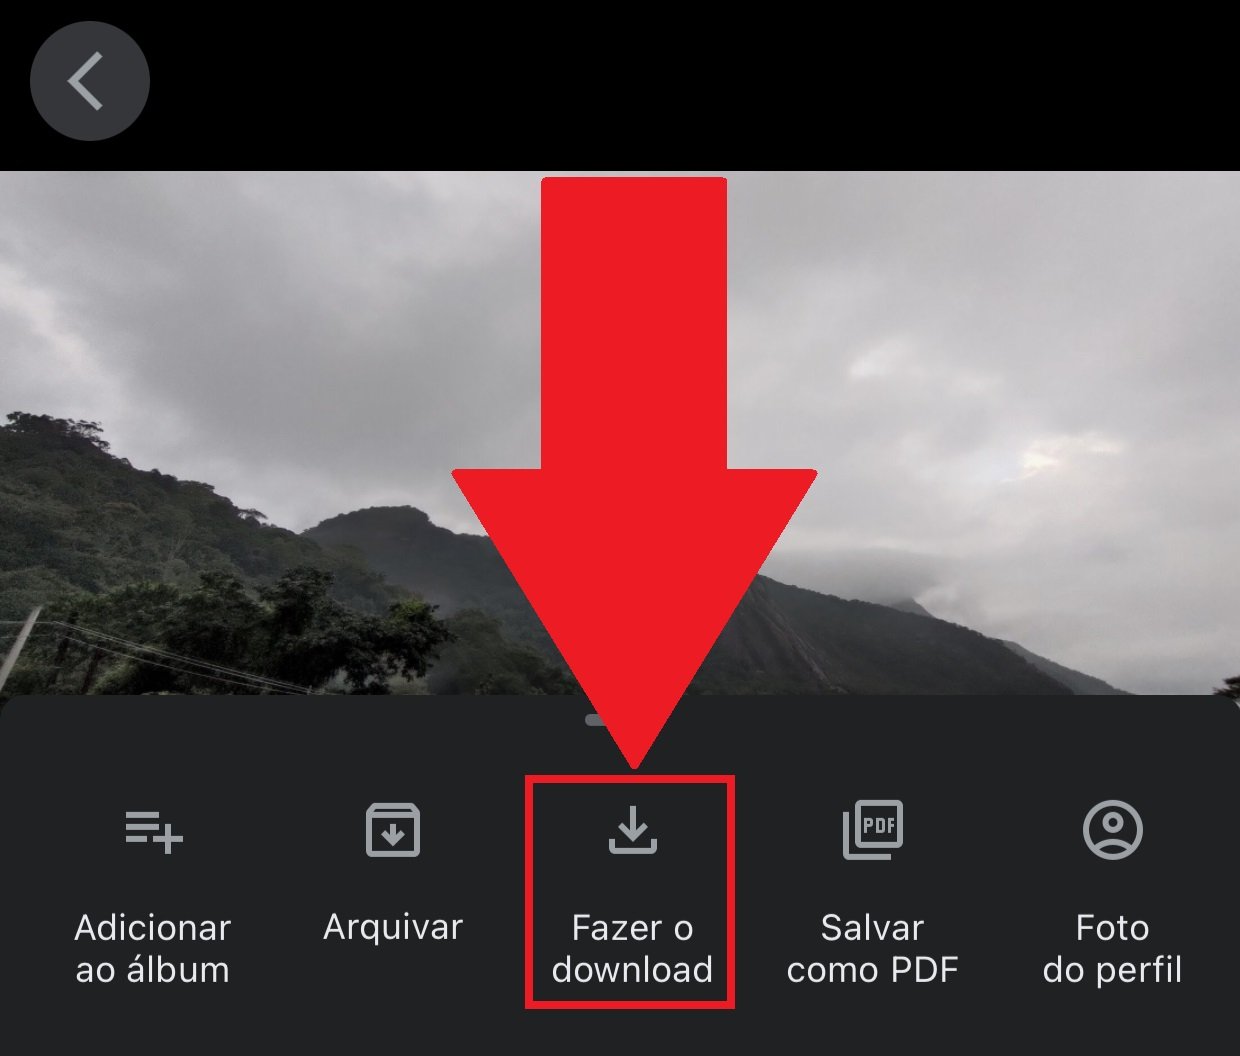 Clicando em "Fazer o download" você baixa automaticamente a foto ou vídeo armazenado na nuvem